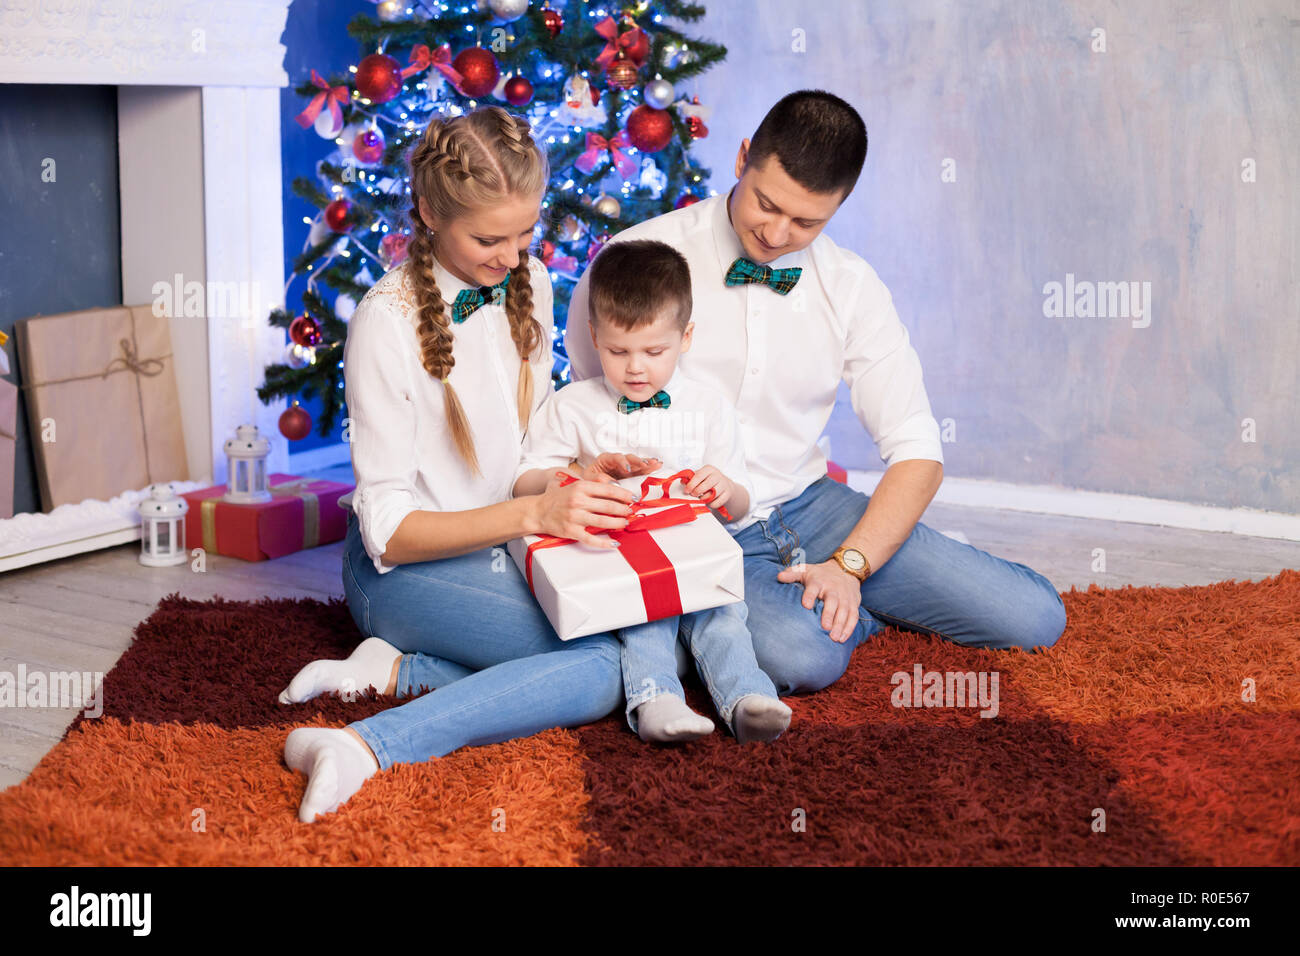 Regali Di Natale Per Mamma E Papa.Mamma E Papa Di Un Ragazzino Aprire I Regali Di Natale Per Il Nuovo Anno Foto Stock Alamy